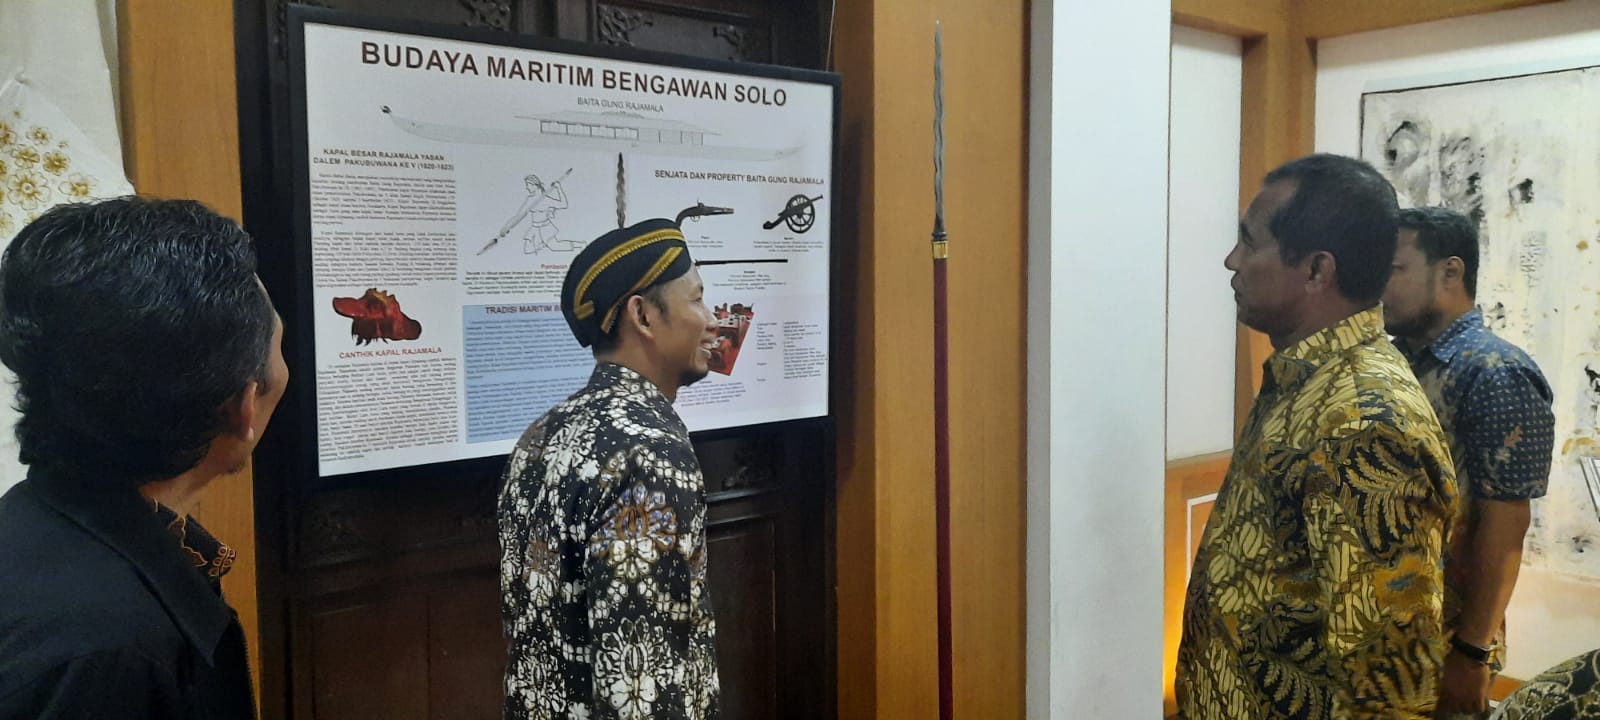 Kharis Dukung Pencinta Tosan Aji Usulkan 25 November sebagai Hari Keris Indonesia